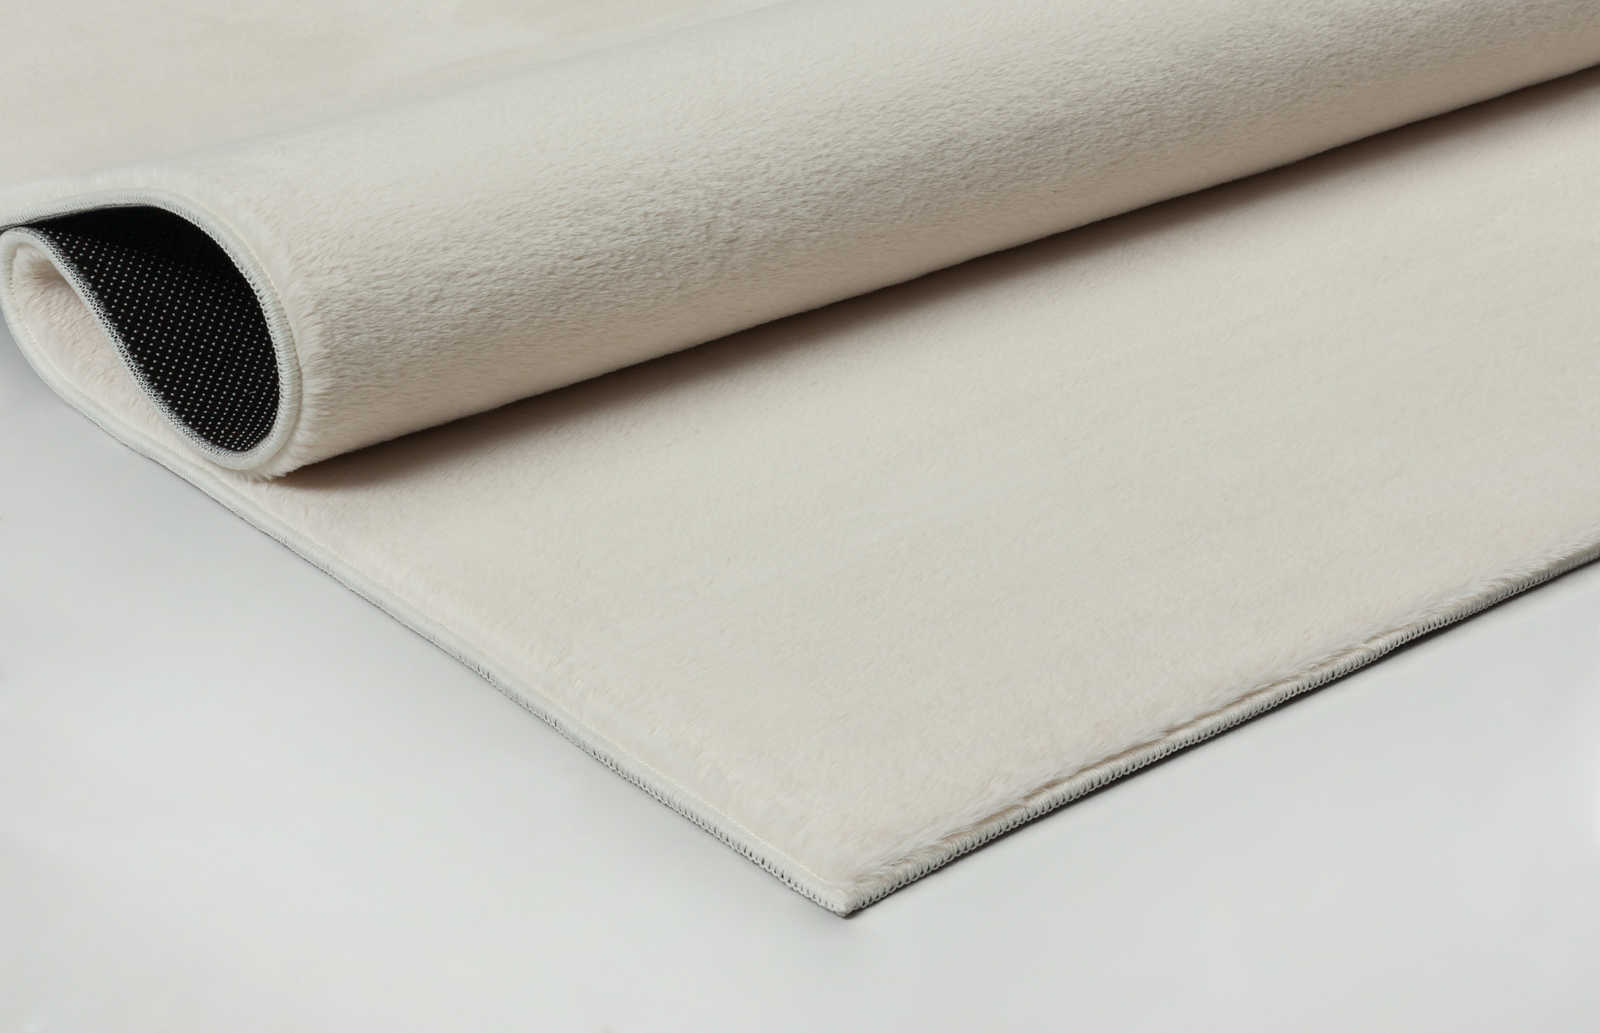             Zacht hoogpolig tapijt in crème - 280 x 200 cm
        